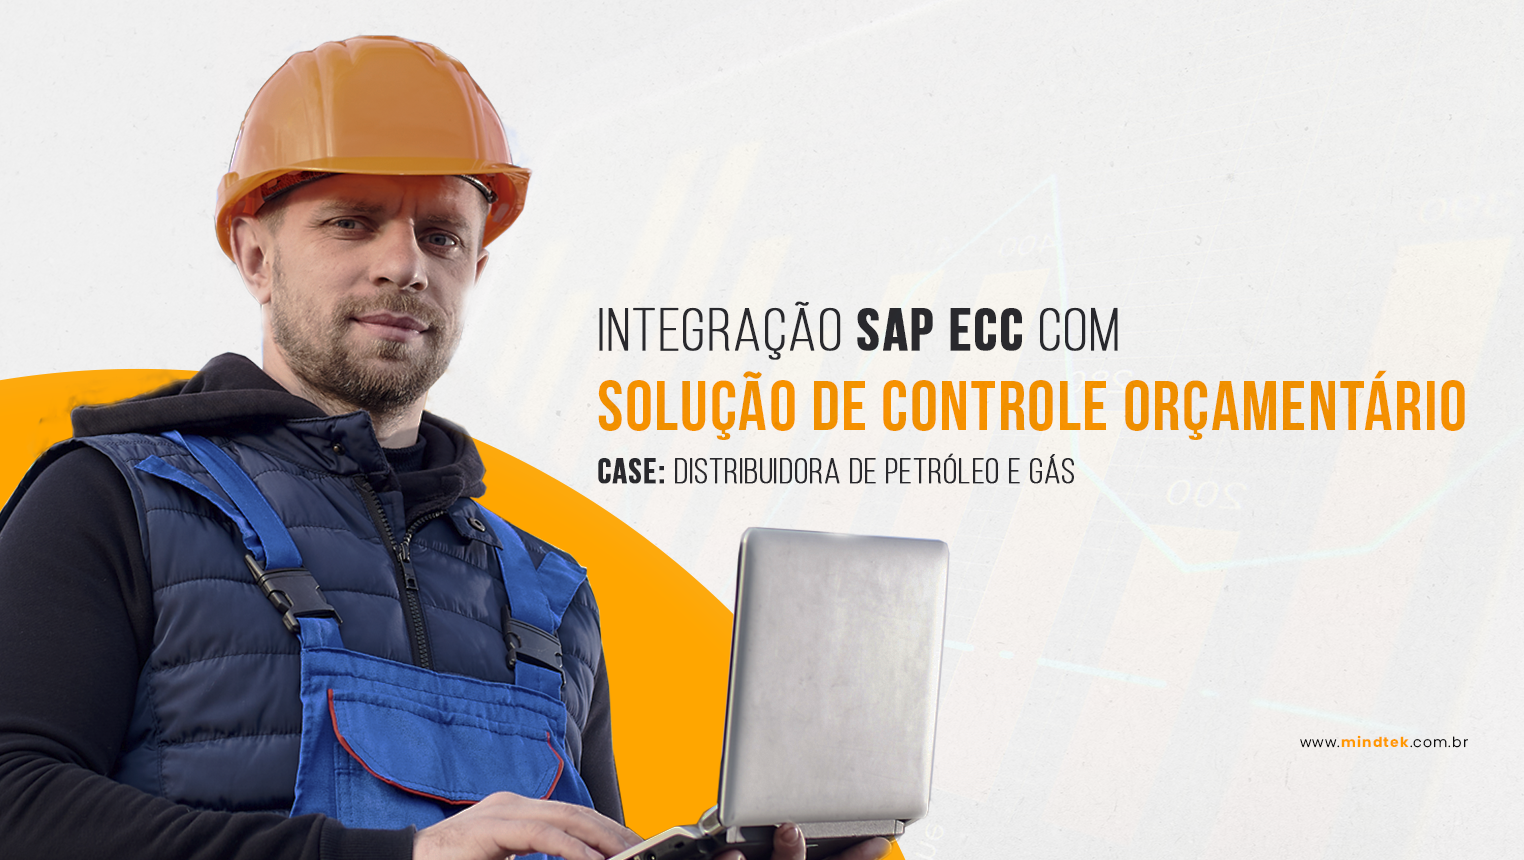 Distribuidora de petróleo e gás utiliza solução Controle Orçamentário integrado ao SAP ECC